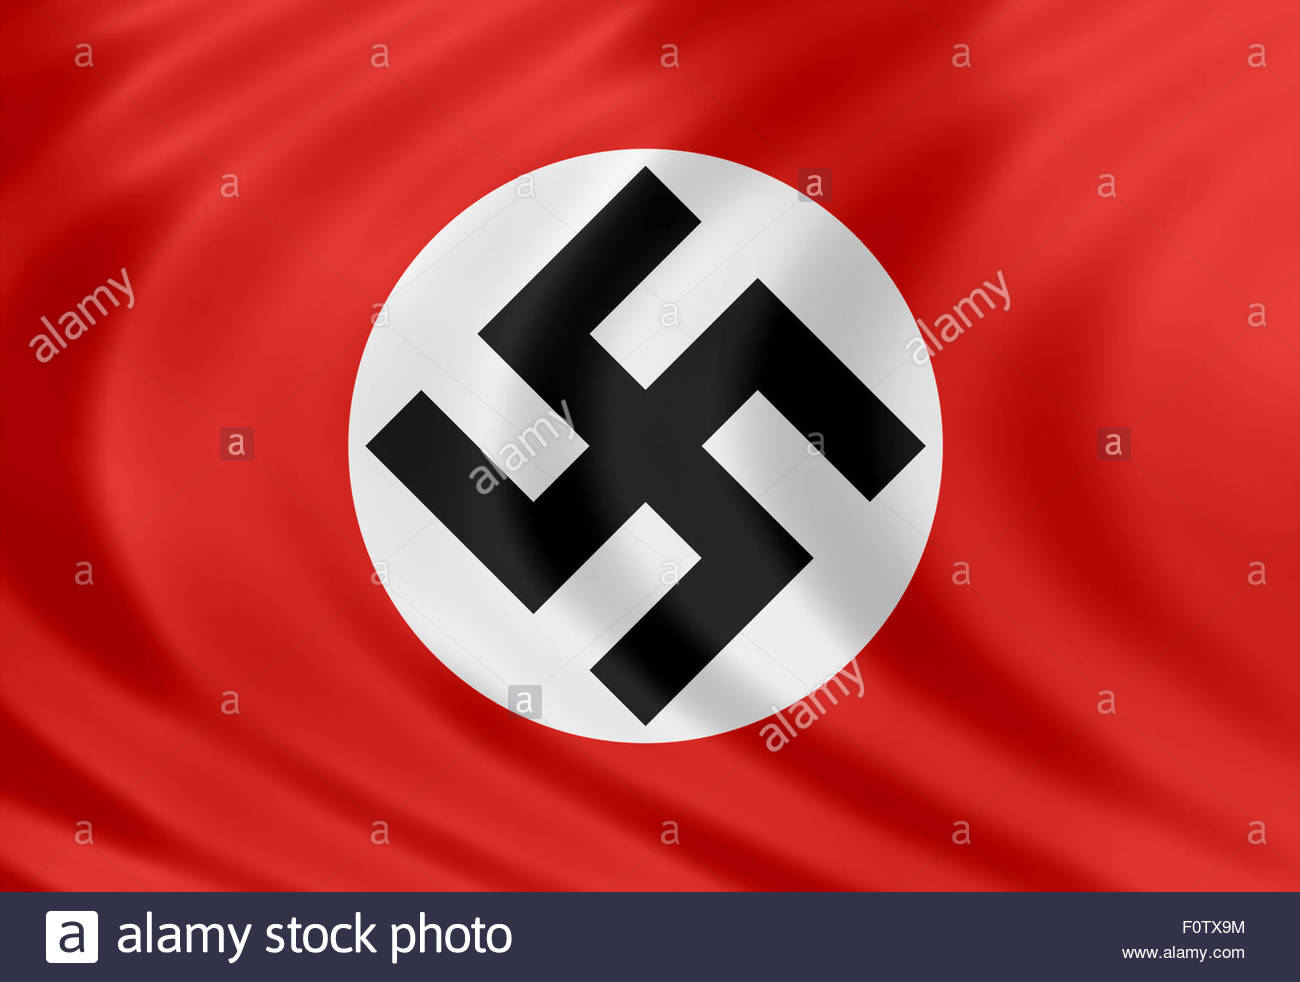 Флаг 3 рей. Флаг третьего рейха. Третий Рейх флаг. Флаг 3 рейха нацистской Германии. Третий Рейх флаг третий Рейх флаг.